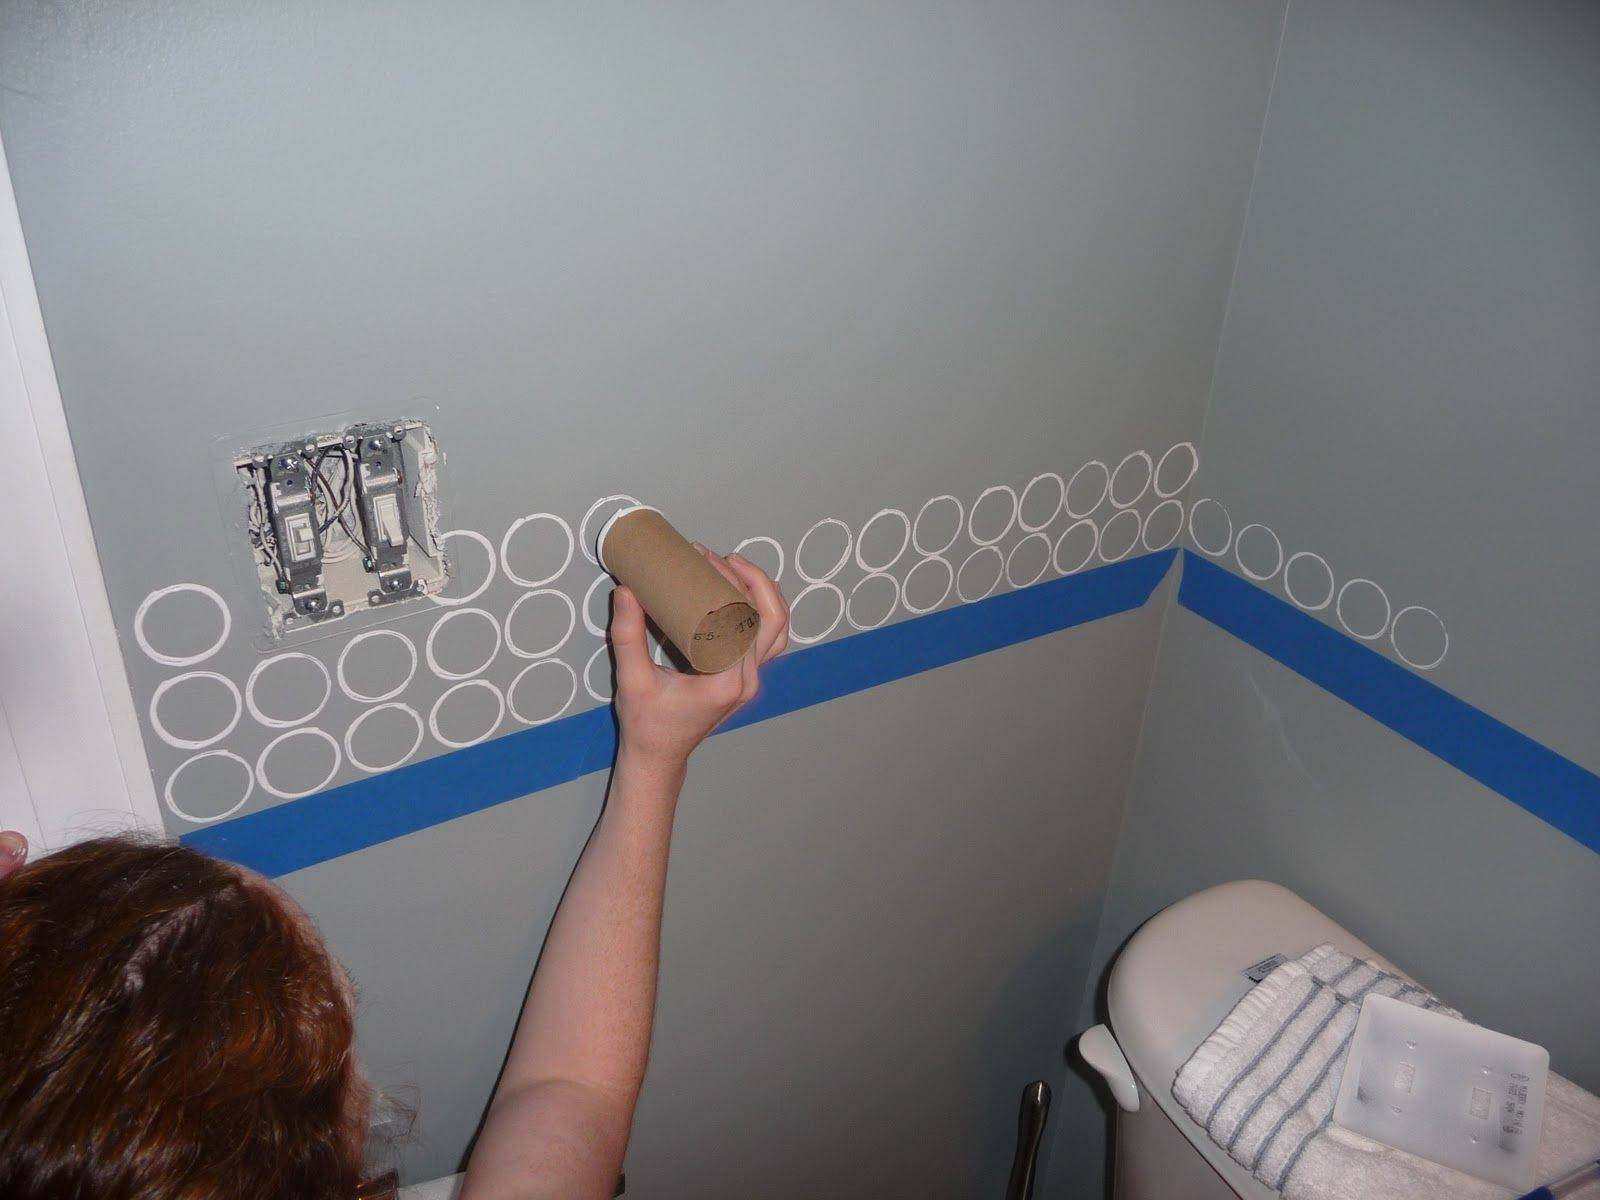 Покраска стен в ванной. Этапы работ и выбор материалов для окраски поверхностей